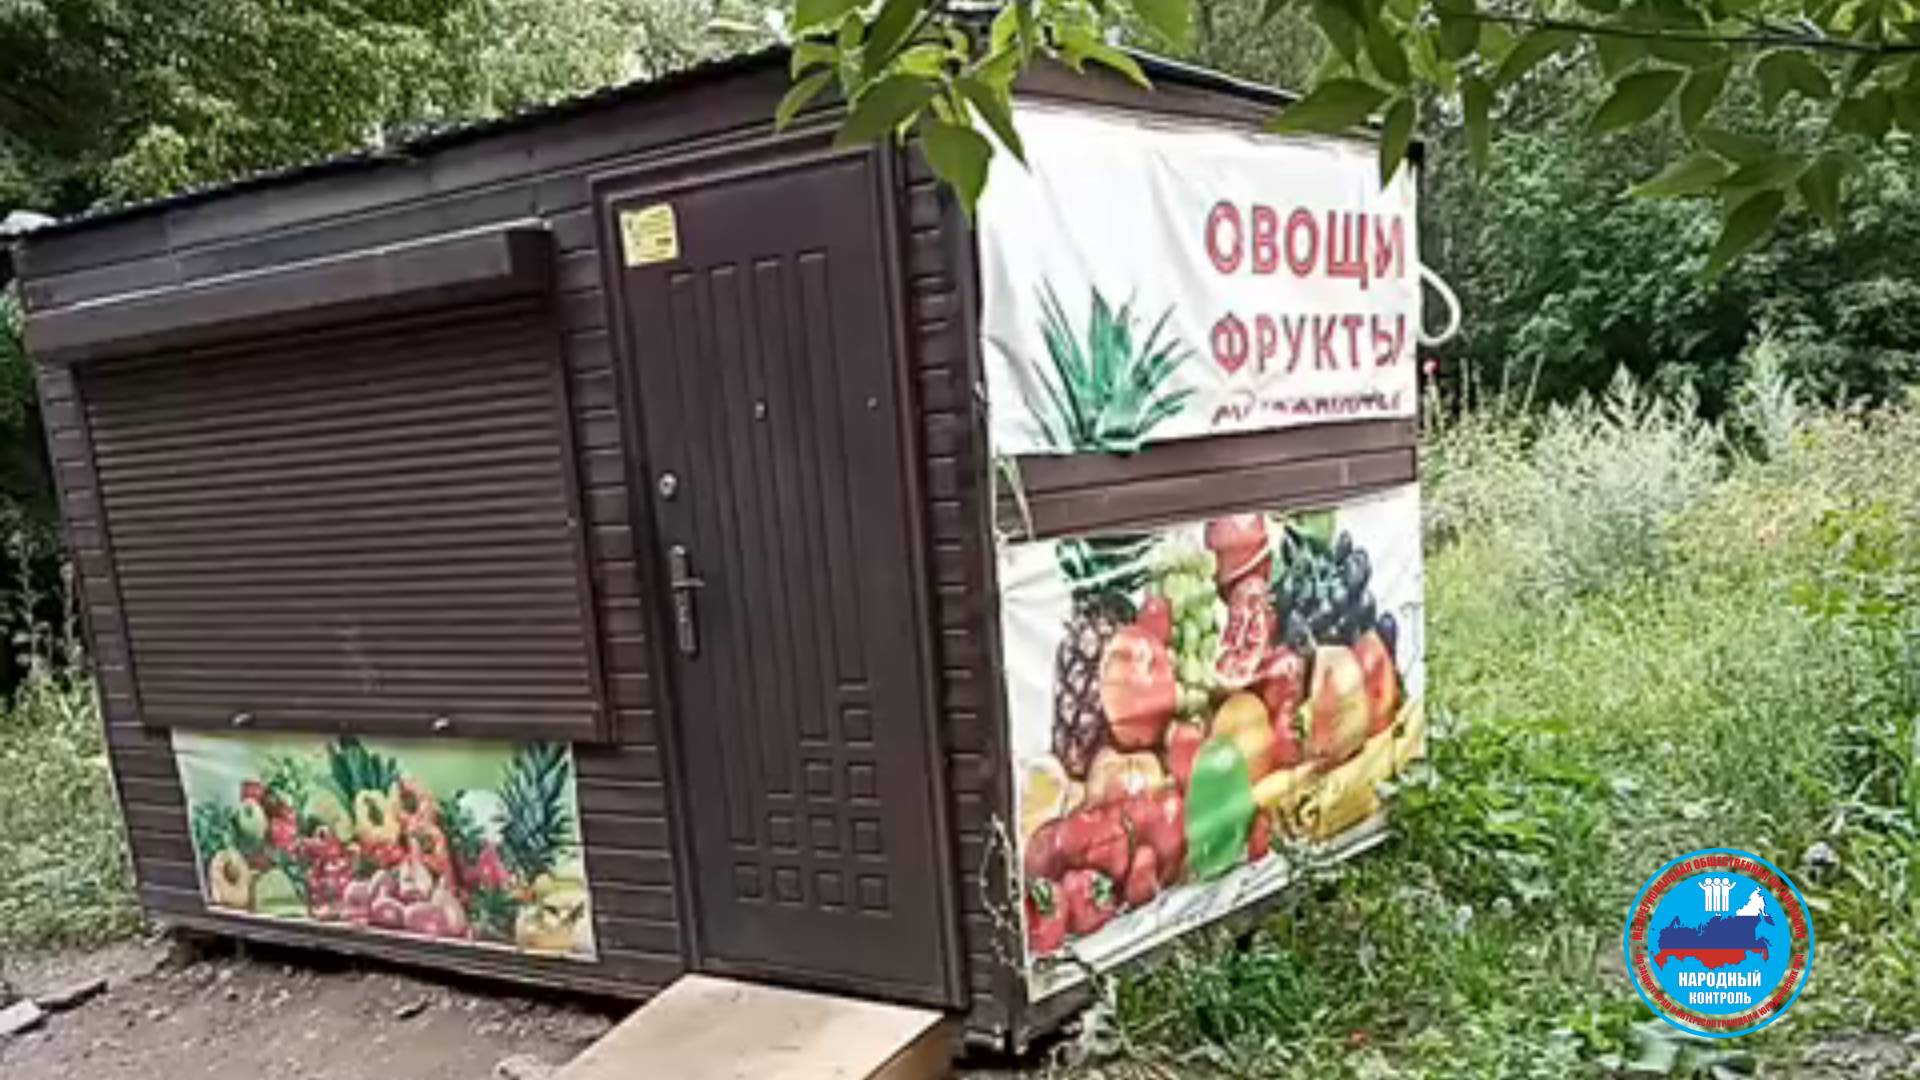 Жители улицы Пушкина в Челябинске жалуются на фруктовый ларек